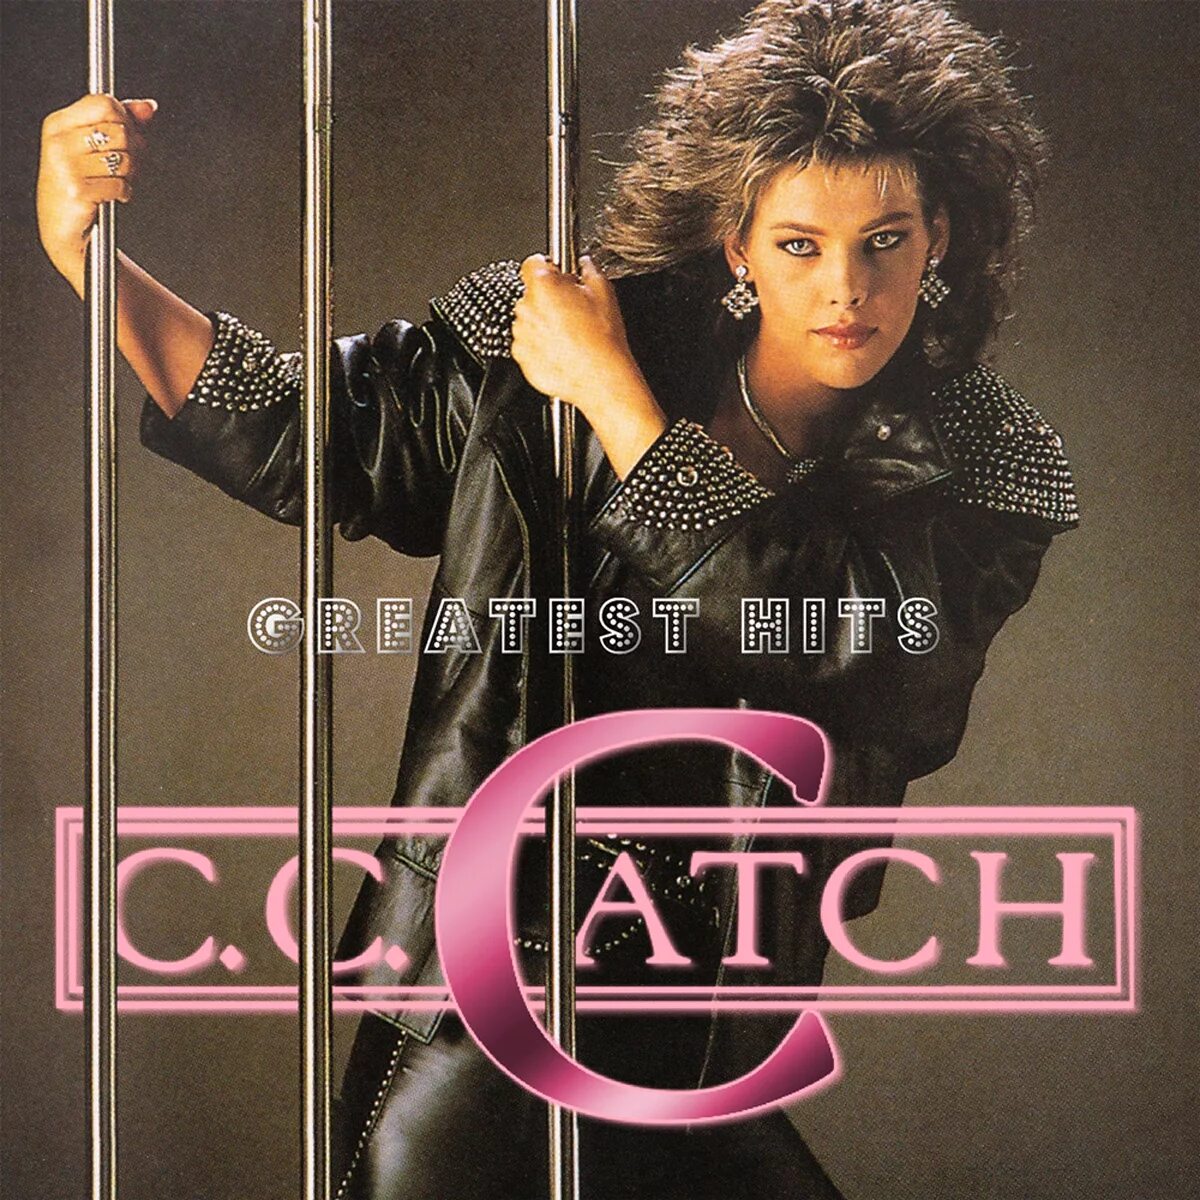 C C catch обложки альбомов. C C catch 1990. Cc catch CD. Cc catch оболочки альбомов.